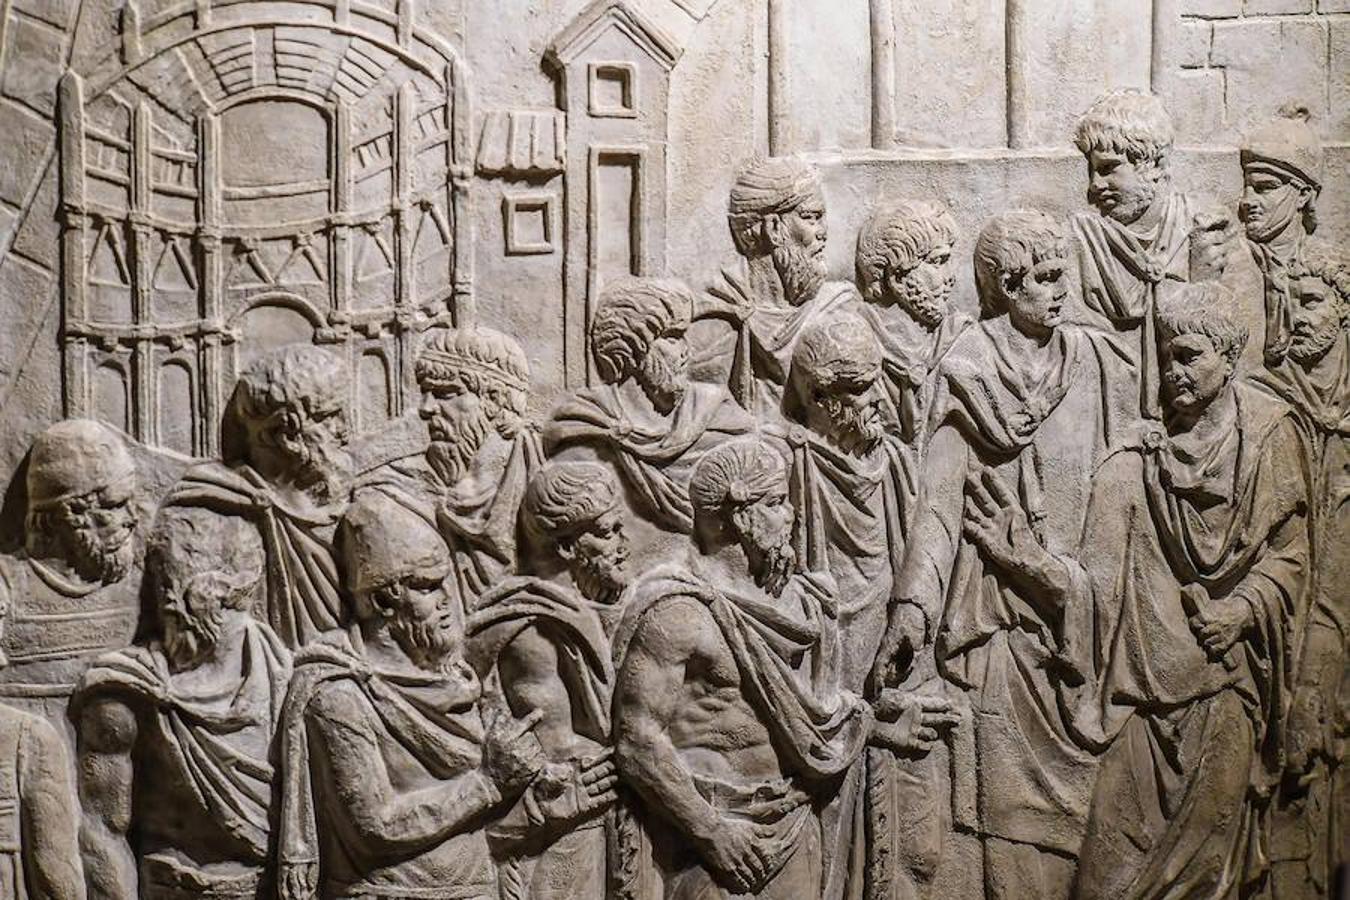 Vista de la obra "Trajano recibe embajadores frente a la representación de la ciudad Drobeta", uno de los relieves de las Columnas de Trajano, fechada el 113 d.C